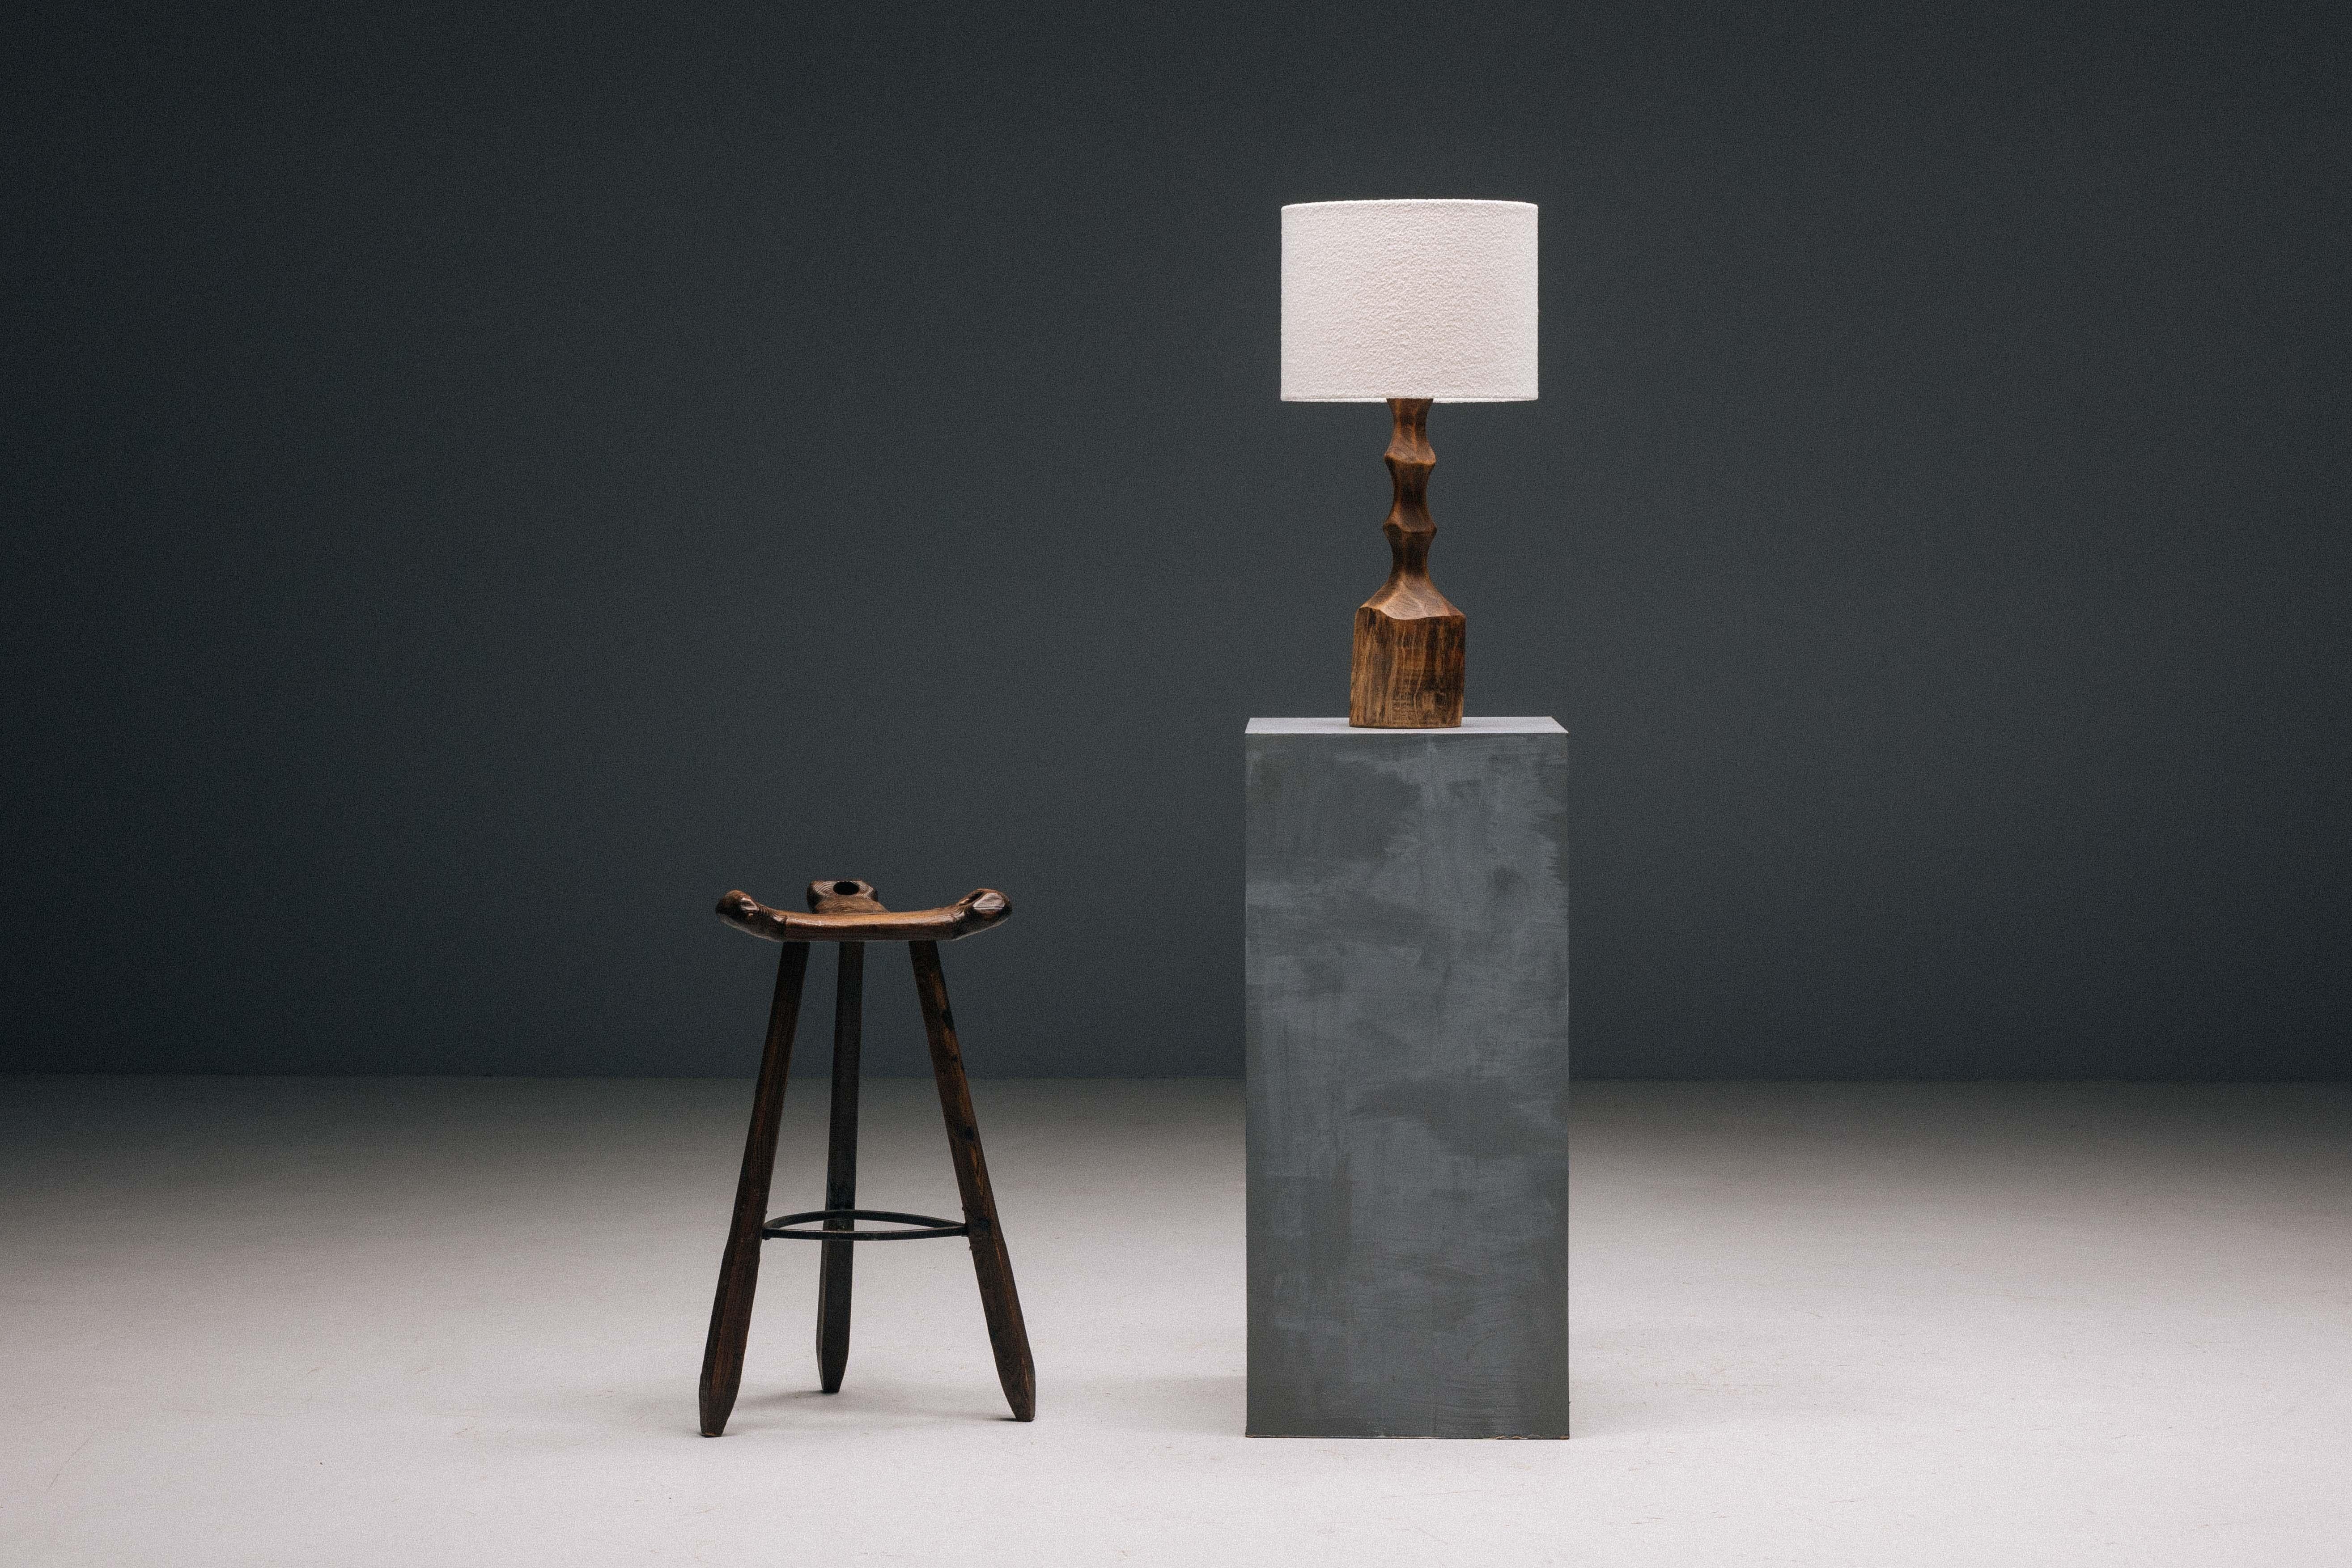 Lampe de table brutaliste en bois massif des années 1970, incarnant l'essence du design brutaliste avec son esthétique brute et sans concession. Sculptée à la main dans un seul bloc de bois, cette lampe est une œuvre d'art unique qui témoigne de